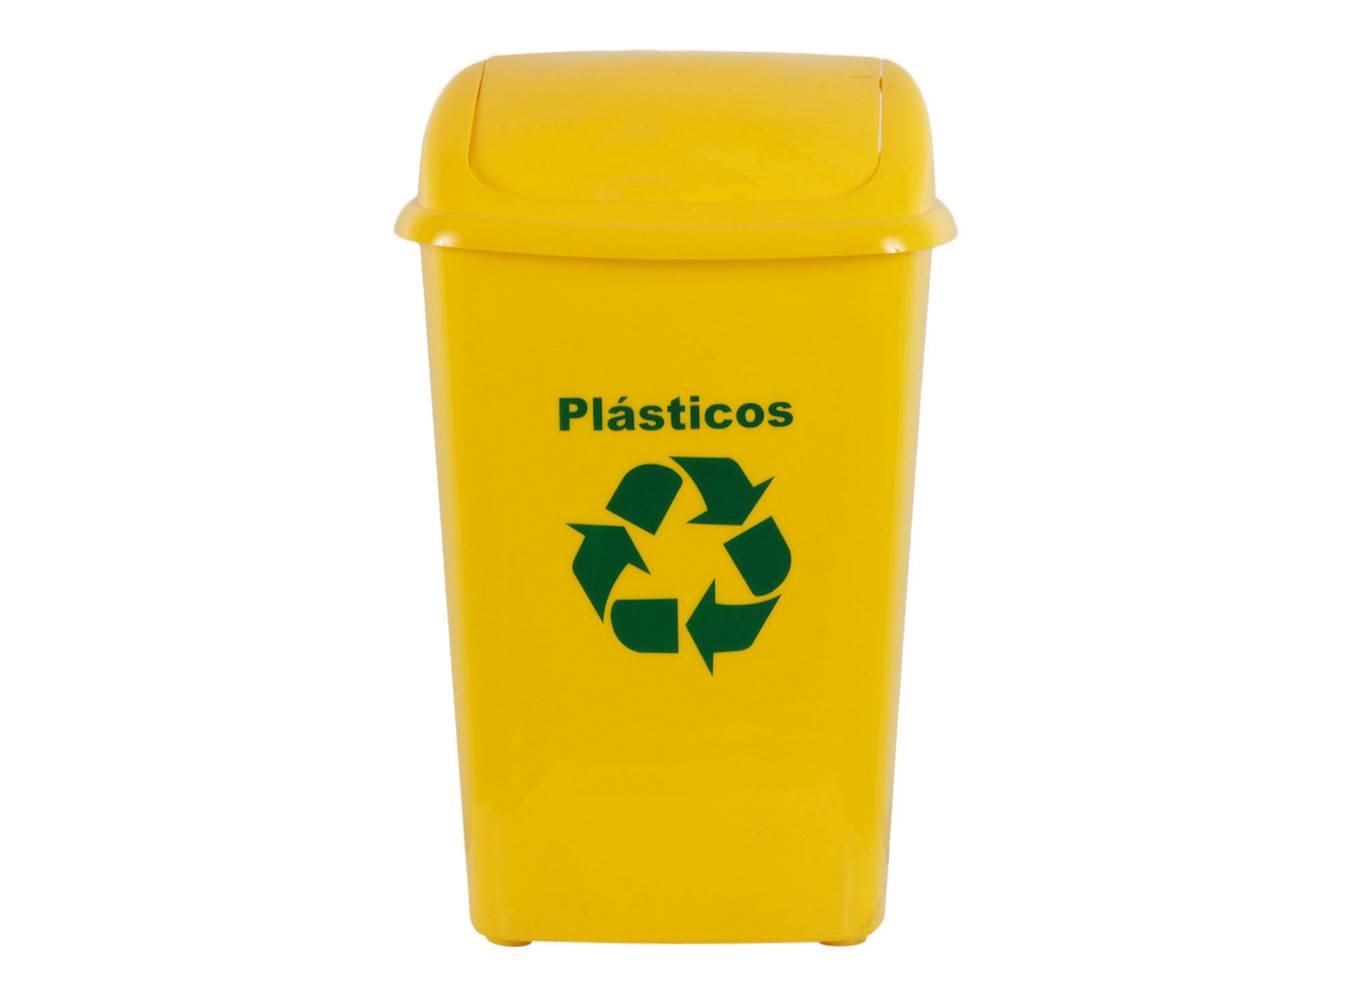 Innovaplast basurero 30 litros reciclaje plástico amarillo (1 basurero, 1 tapa)